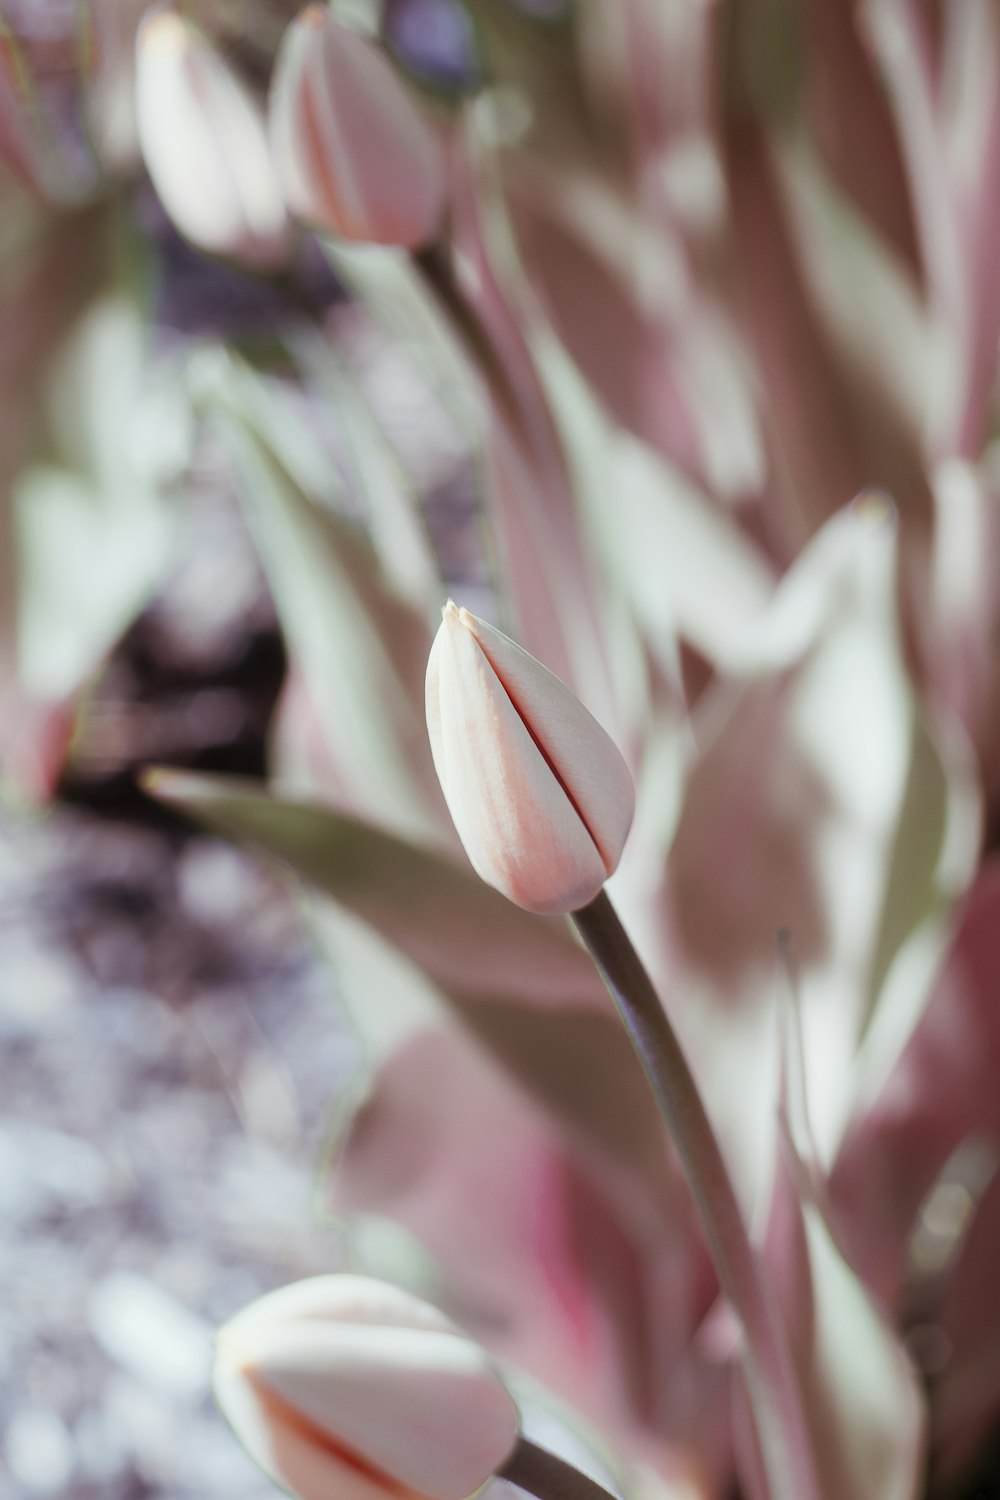 pink and white tulips in tilt shift lens